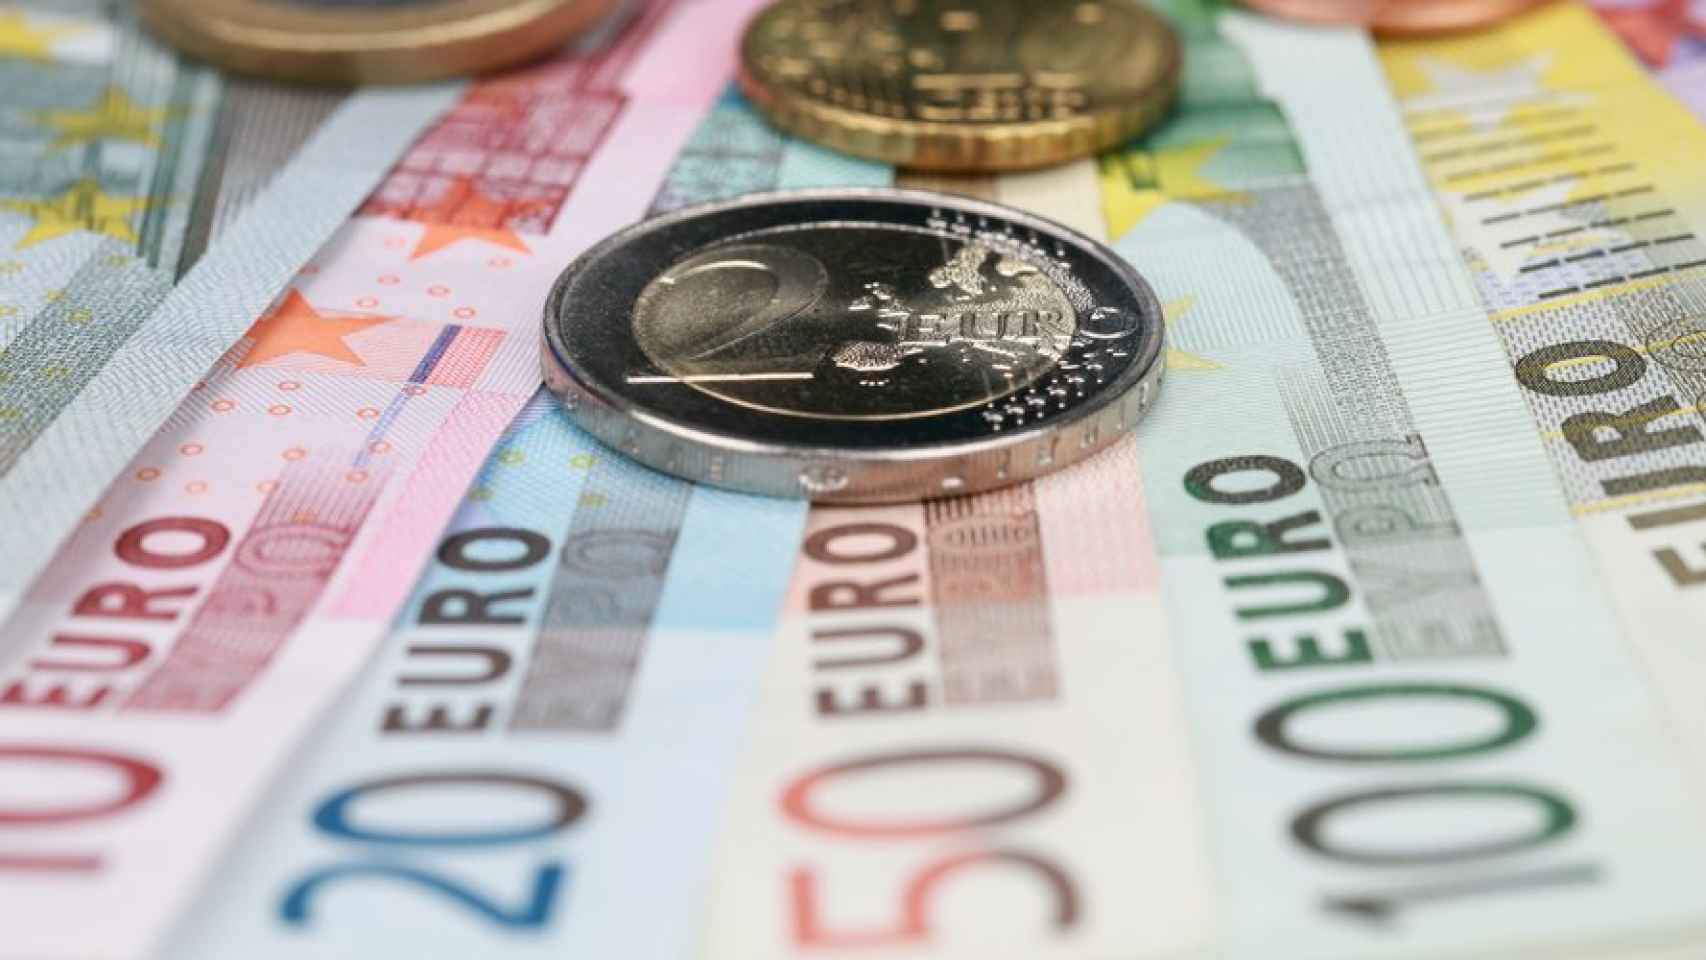 Billetes y monedas de euro de distinta denominación.